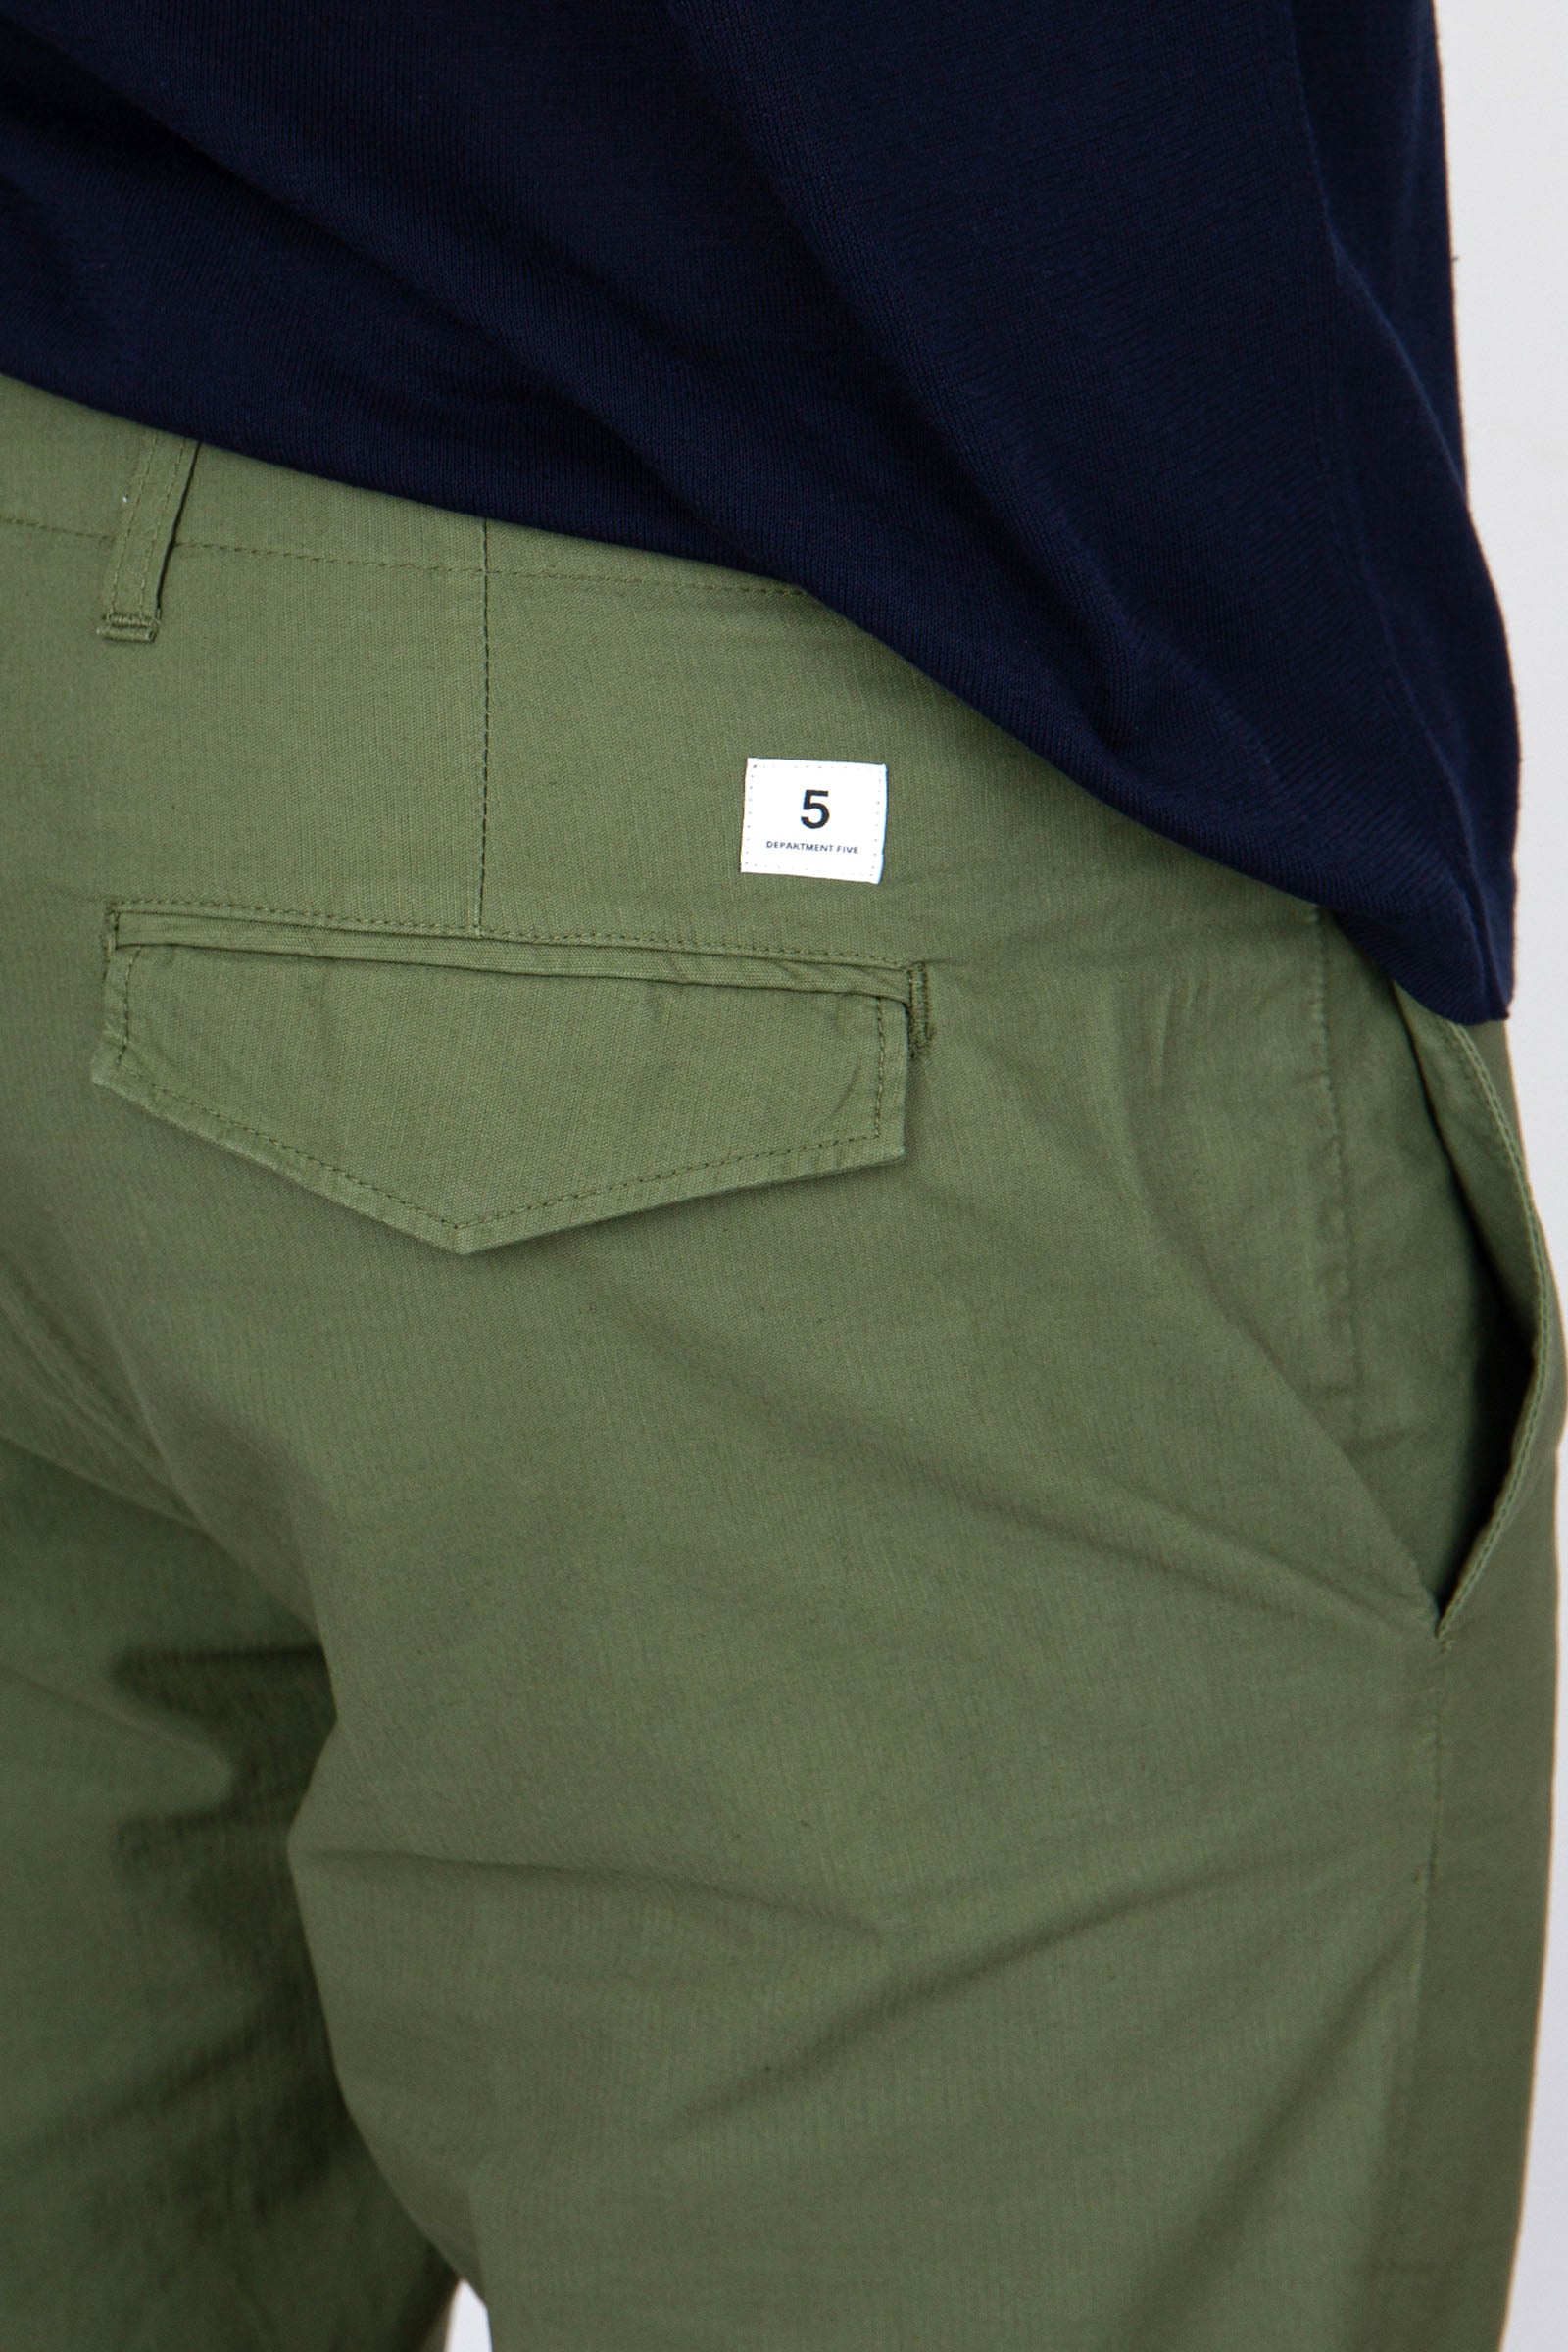 Department Five Pantalone Cotone Verde Militare - 2